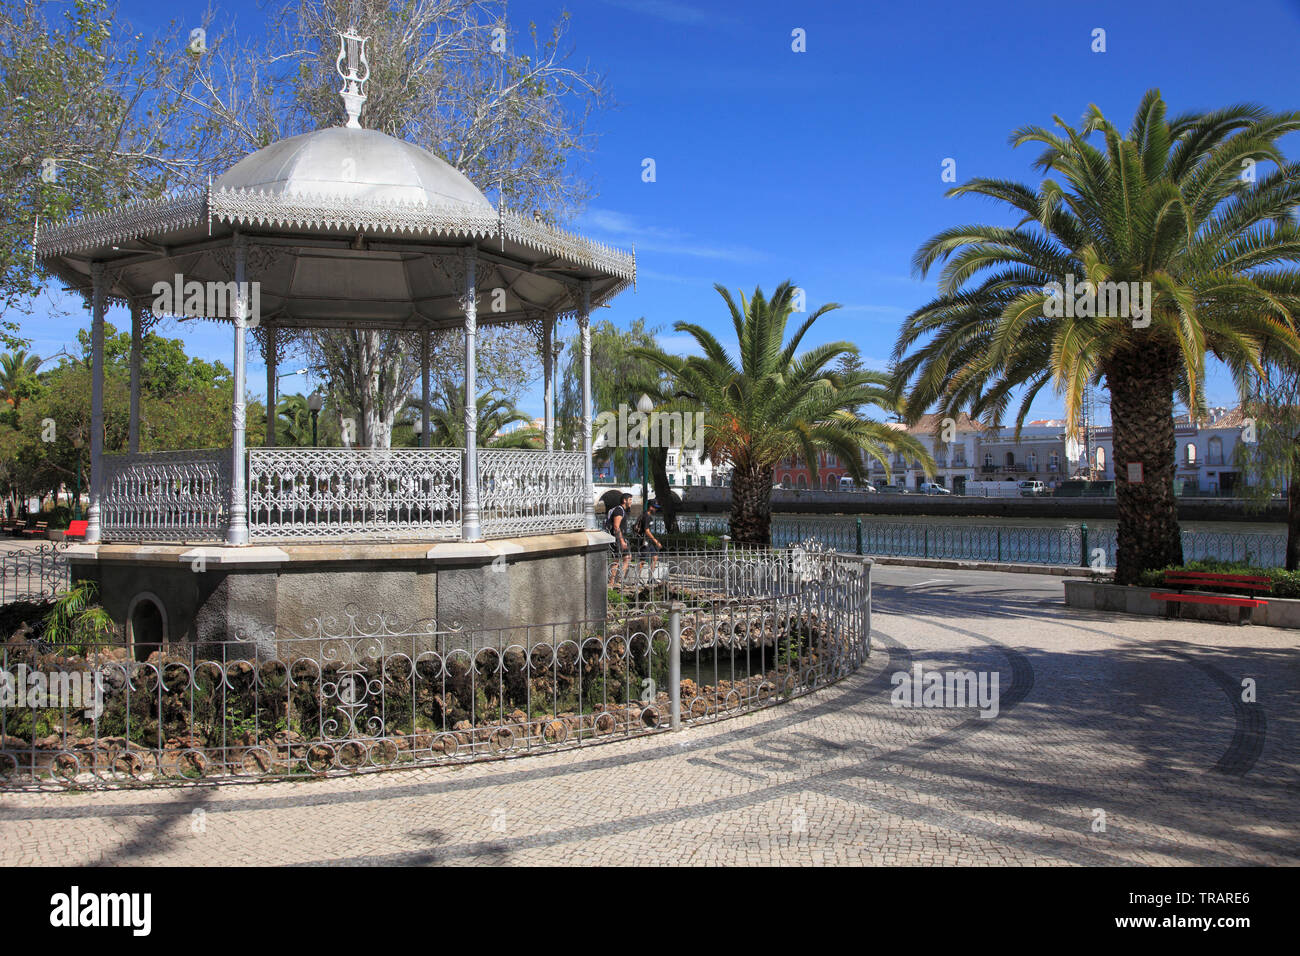 Portugal, Algarve, Tavira, kiosk, street scene, palms, Stock Photo